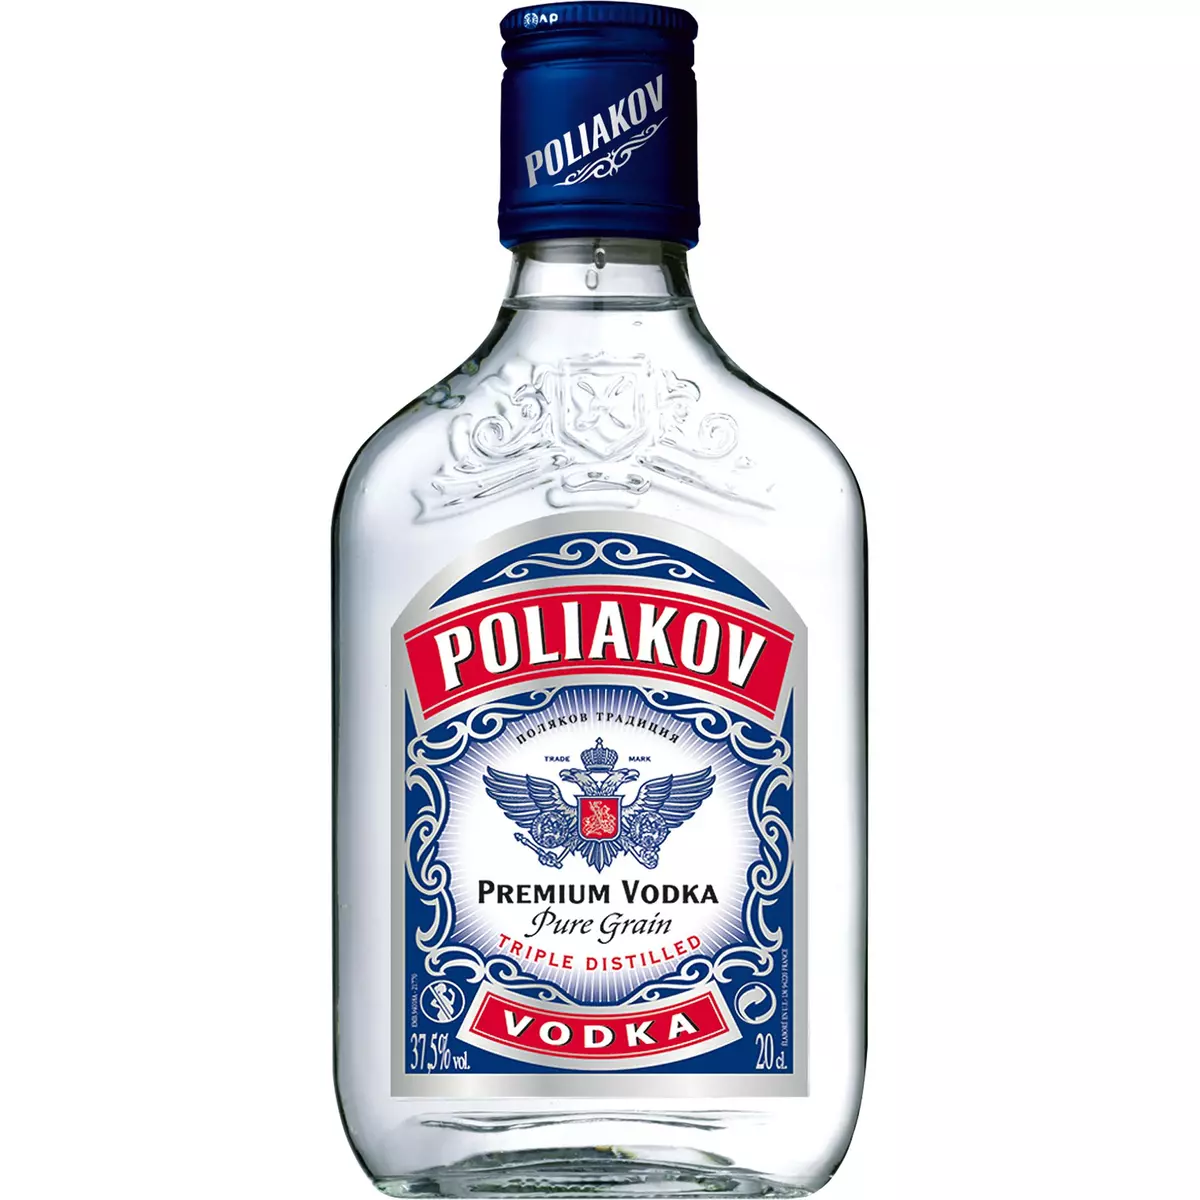 POLIAKOV Vodka pure grain 37,5% flasque 20cl